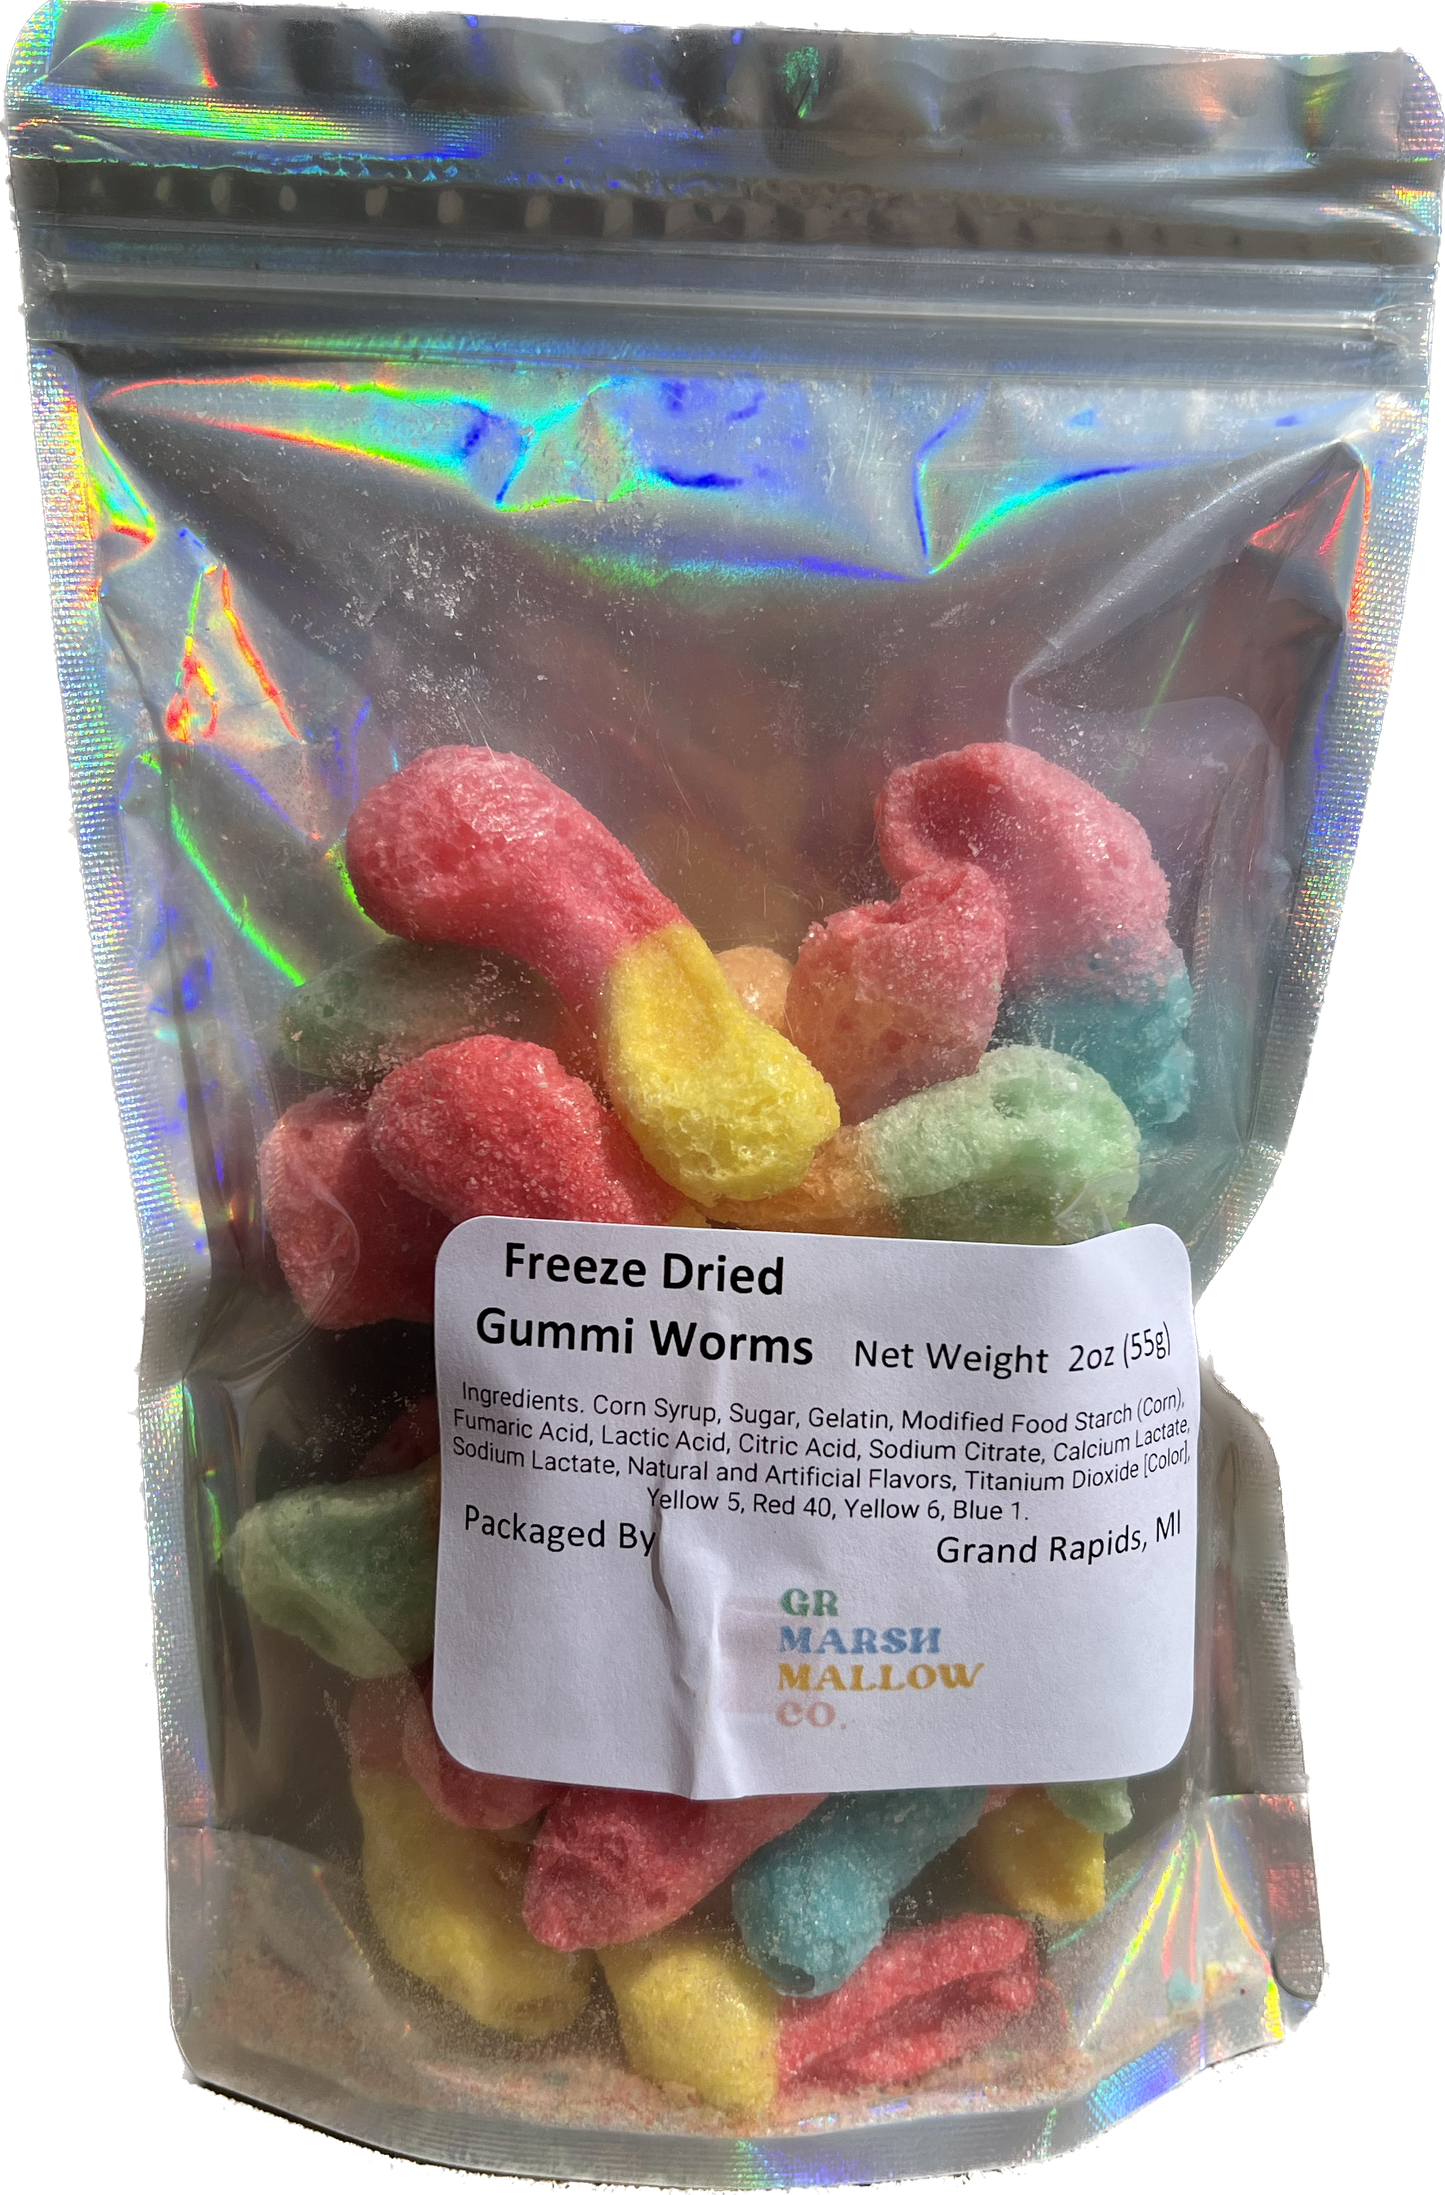 Freeze Dried Gummi Worms